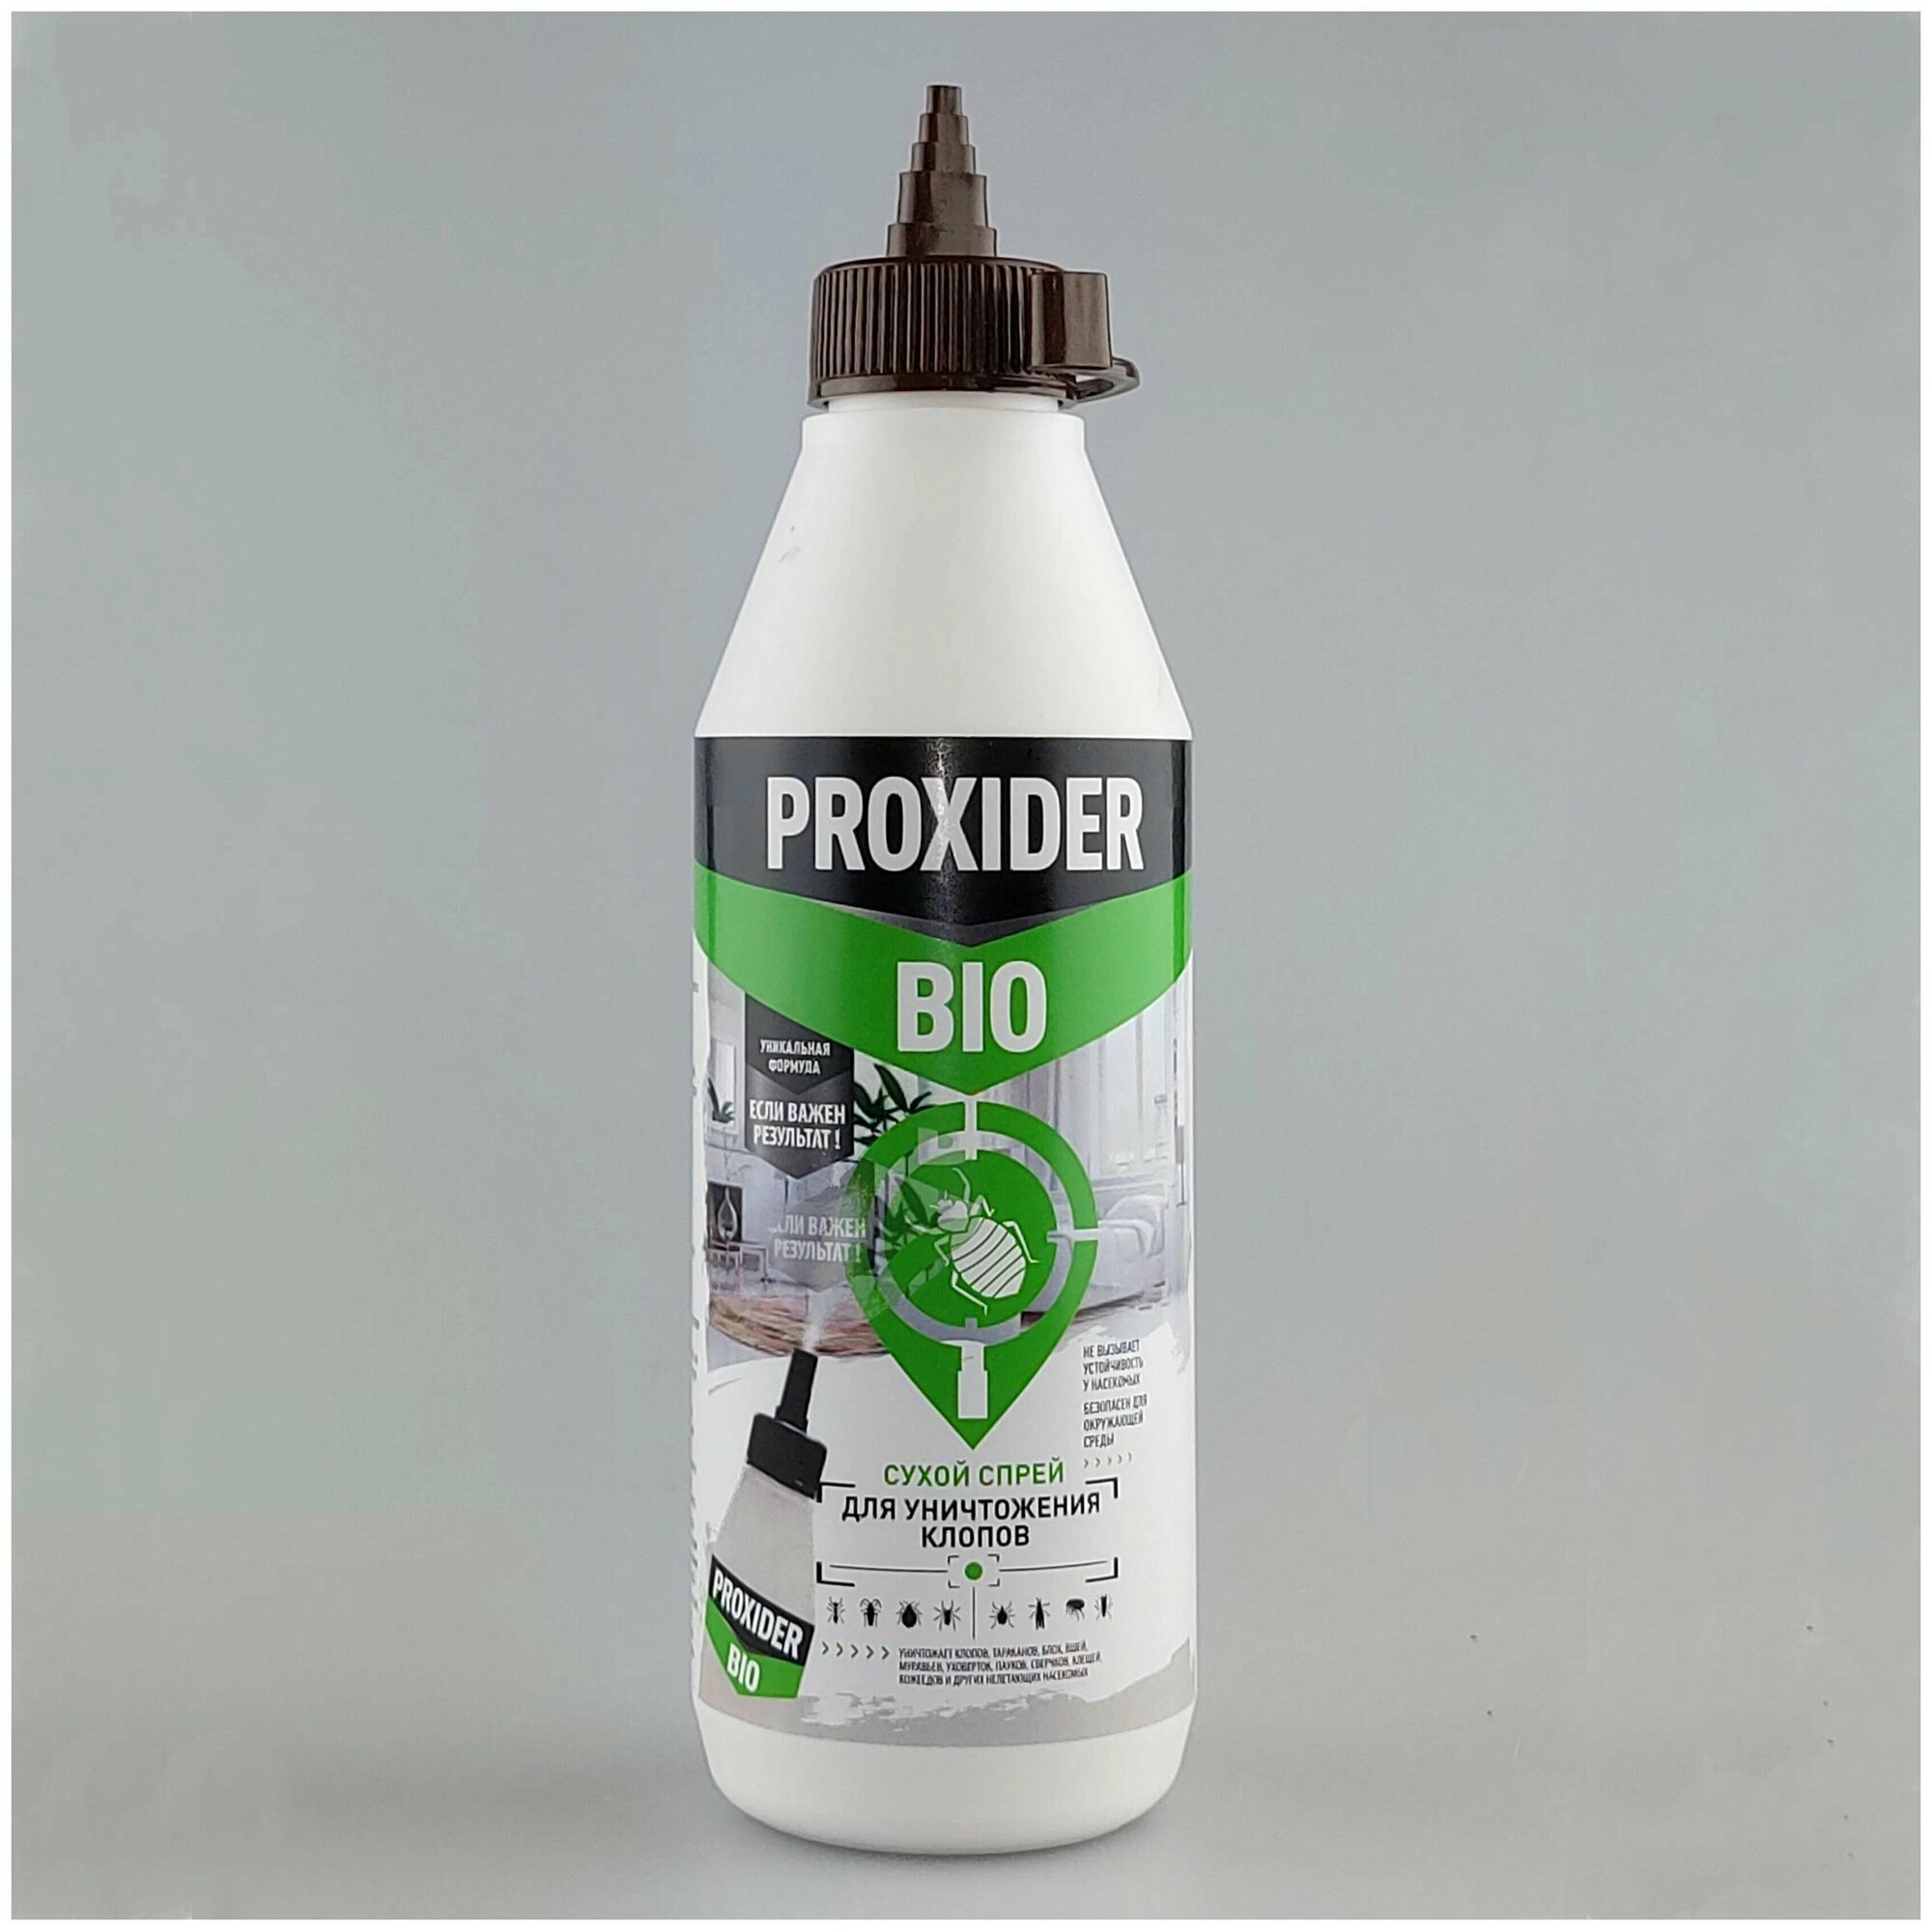 Порошок PyroFX PROXIDER BIO (Проксайдер био) от клопов и других ползающих насекомых 5800 мл белый